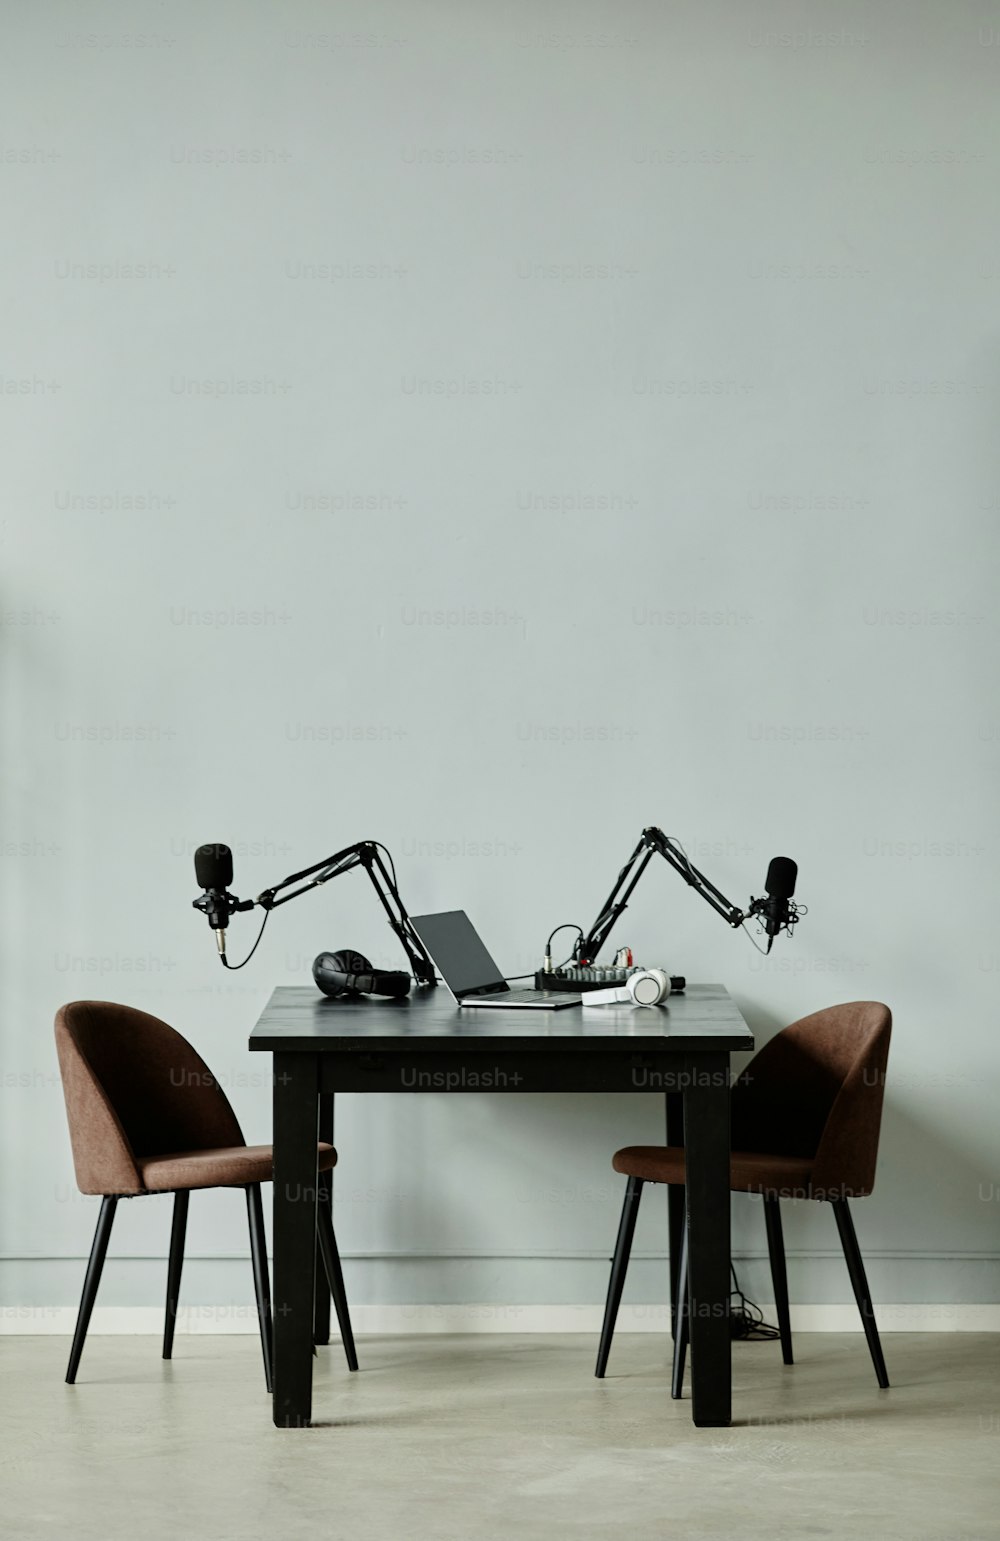 2つの椅子を持つポッドキャスト録音スタジオの垂直背景画像、コピー用スペース